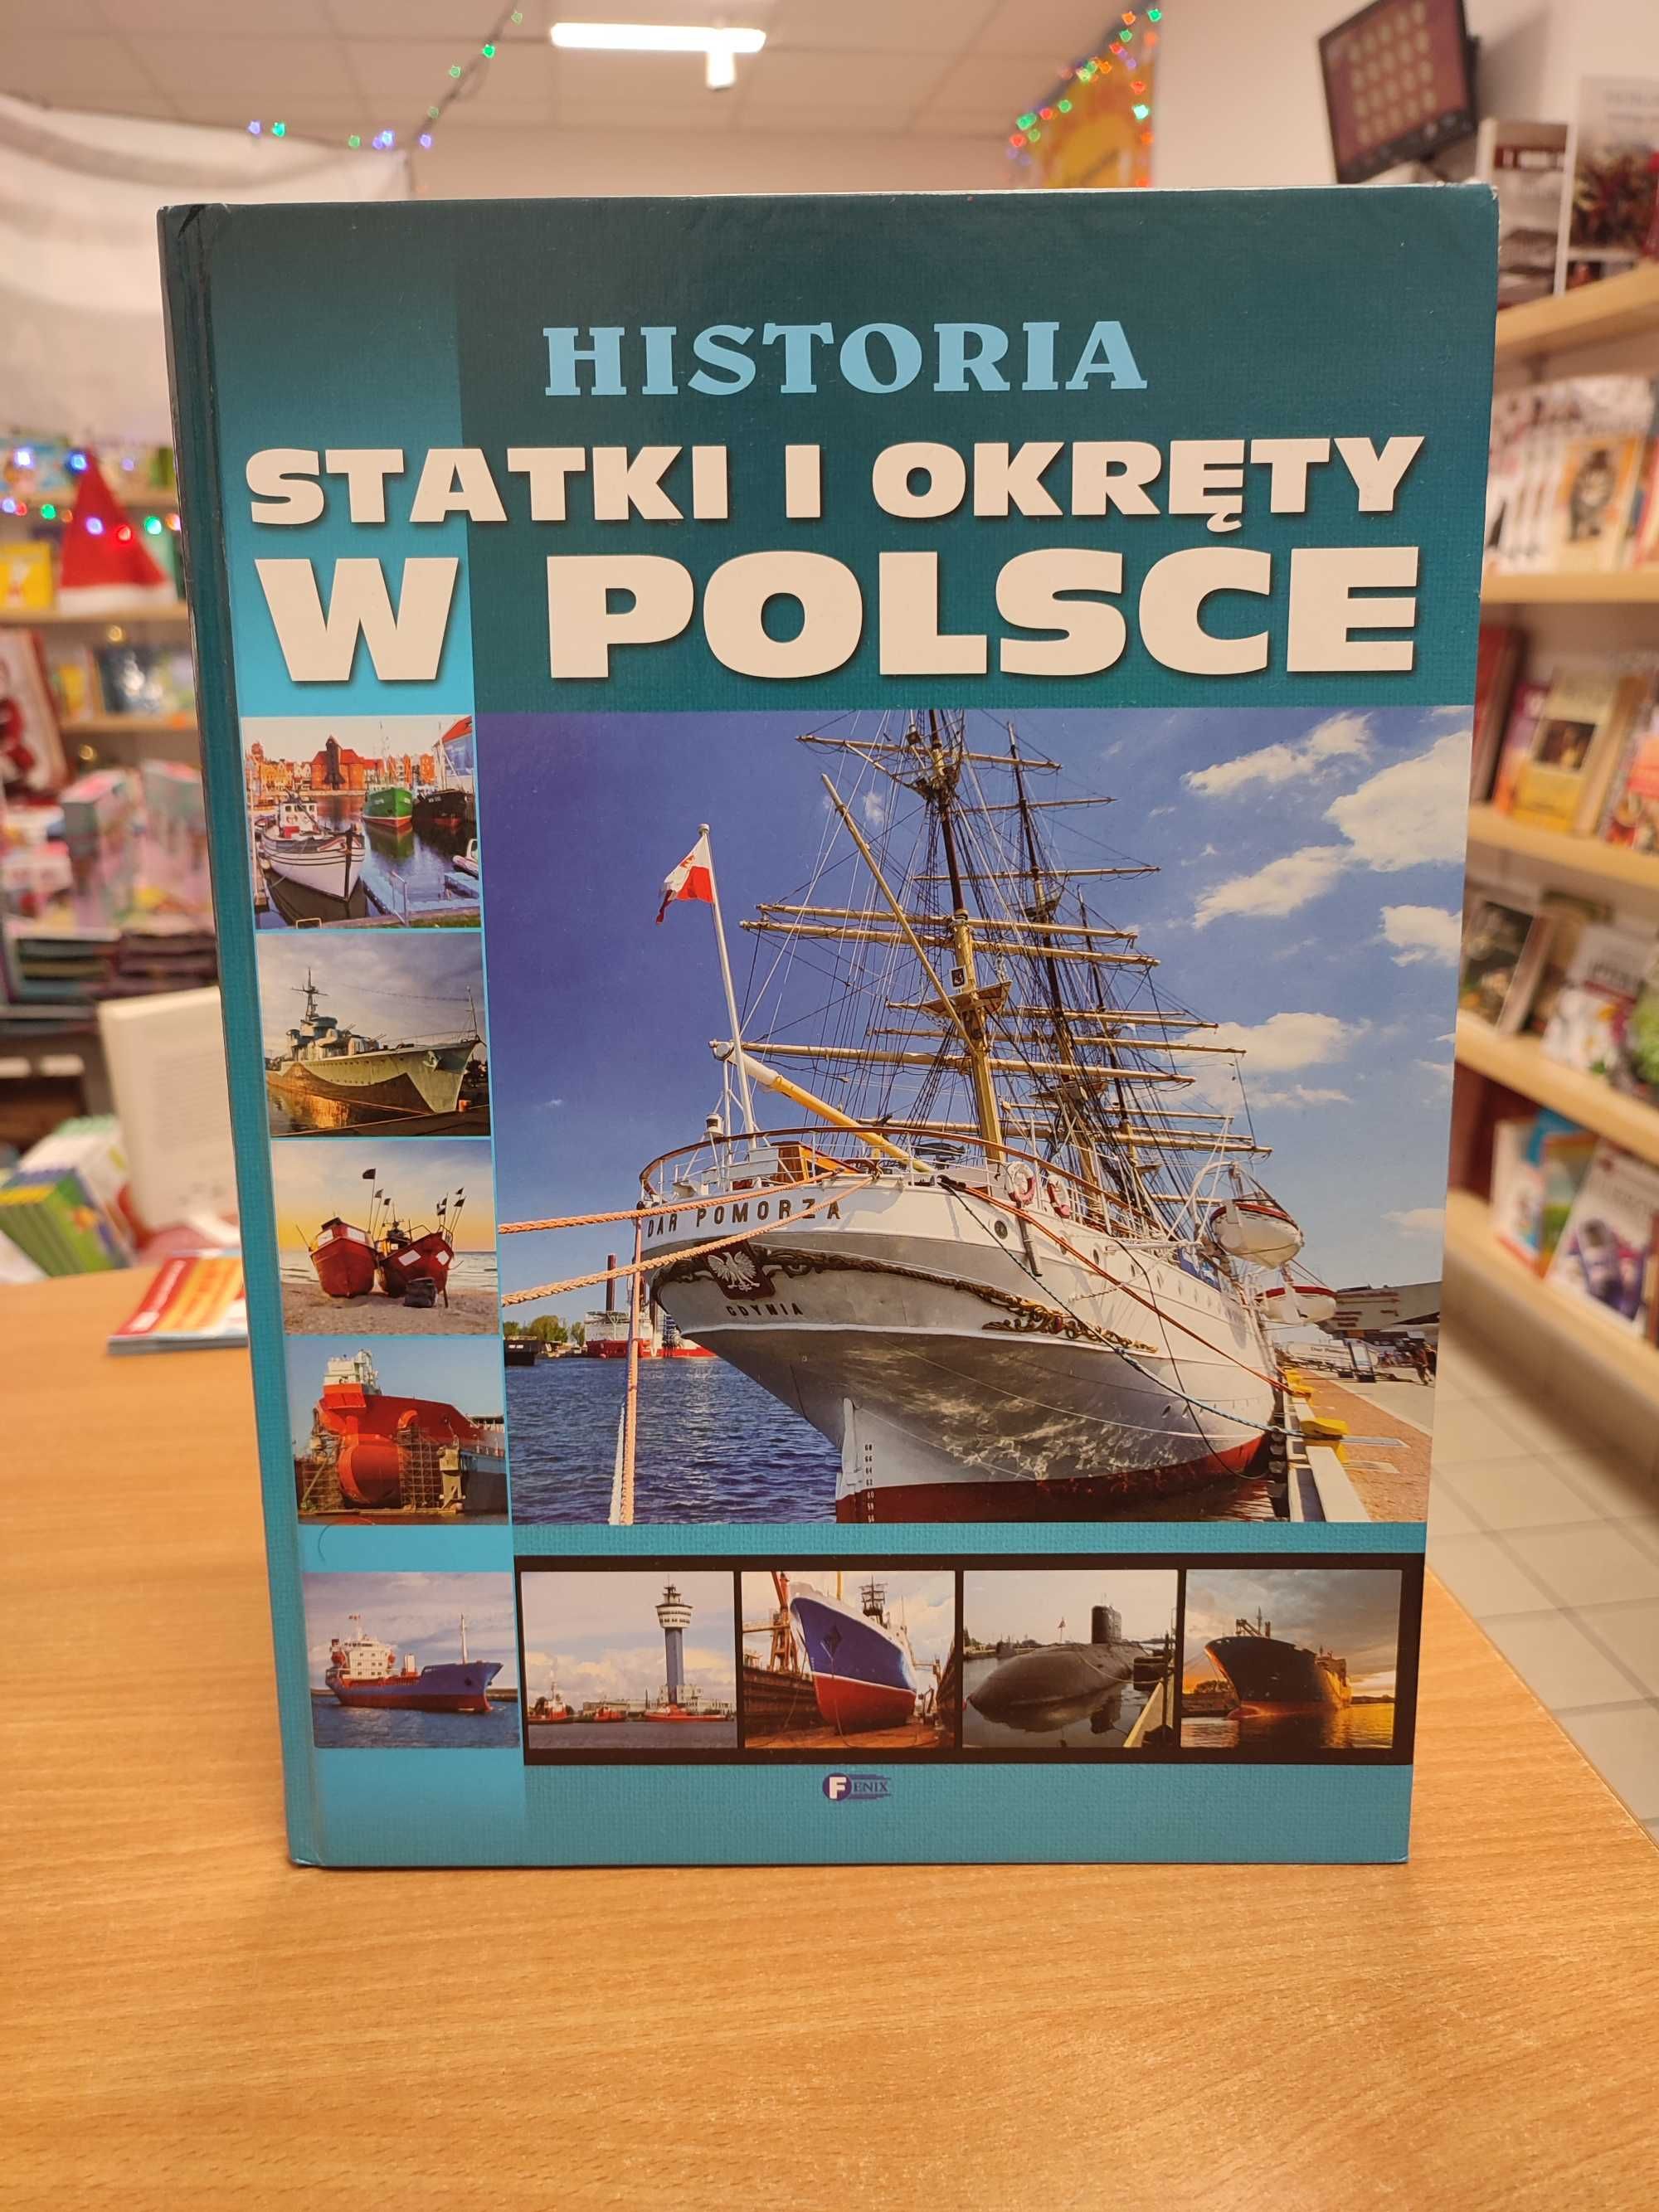 Historia, statki i okręty w Polsce